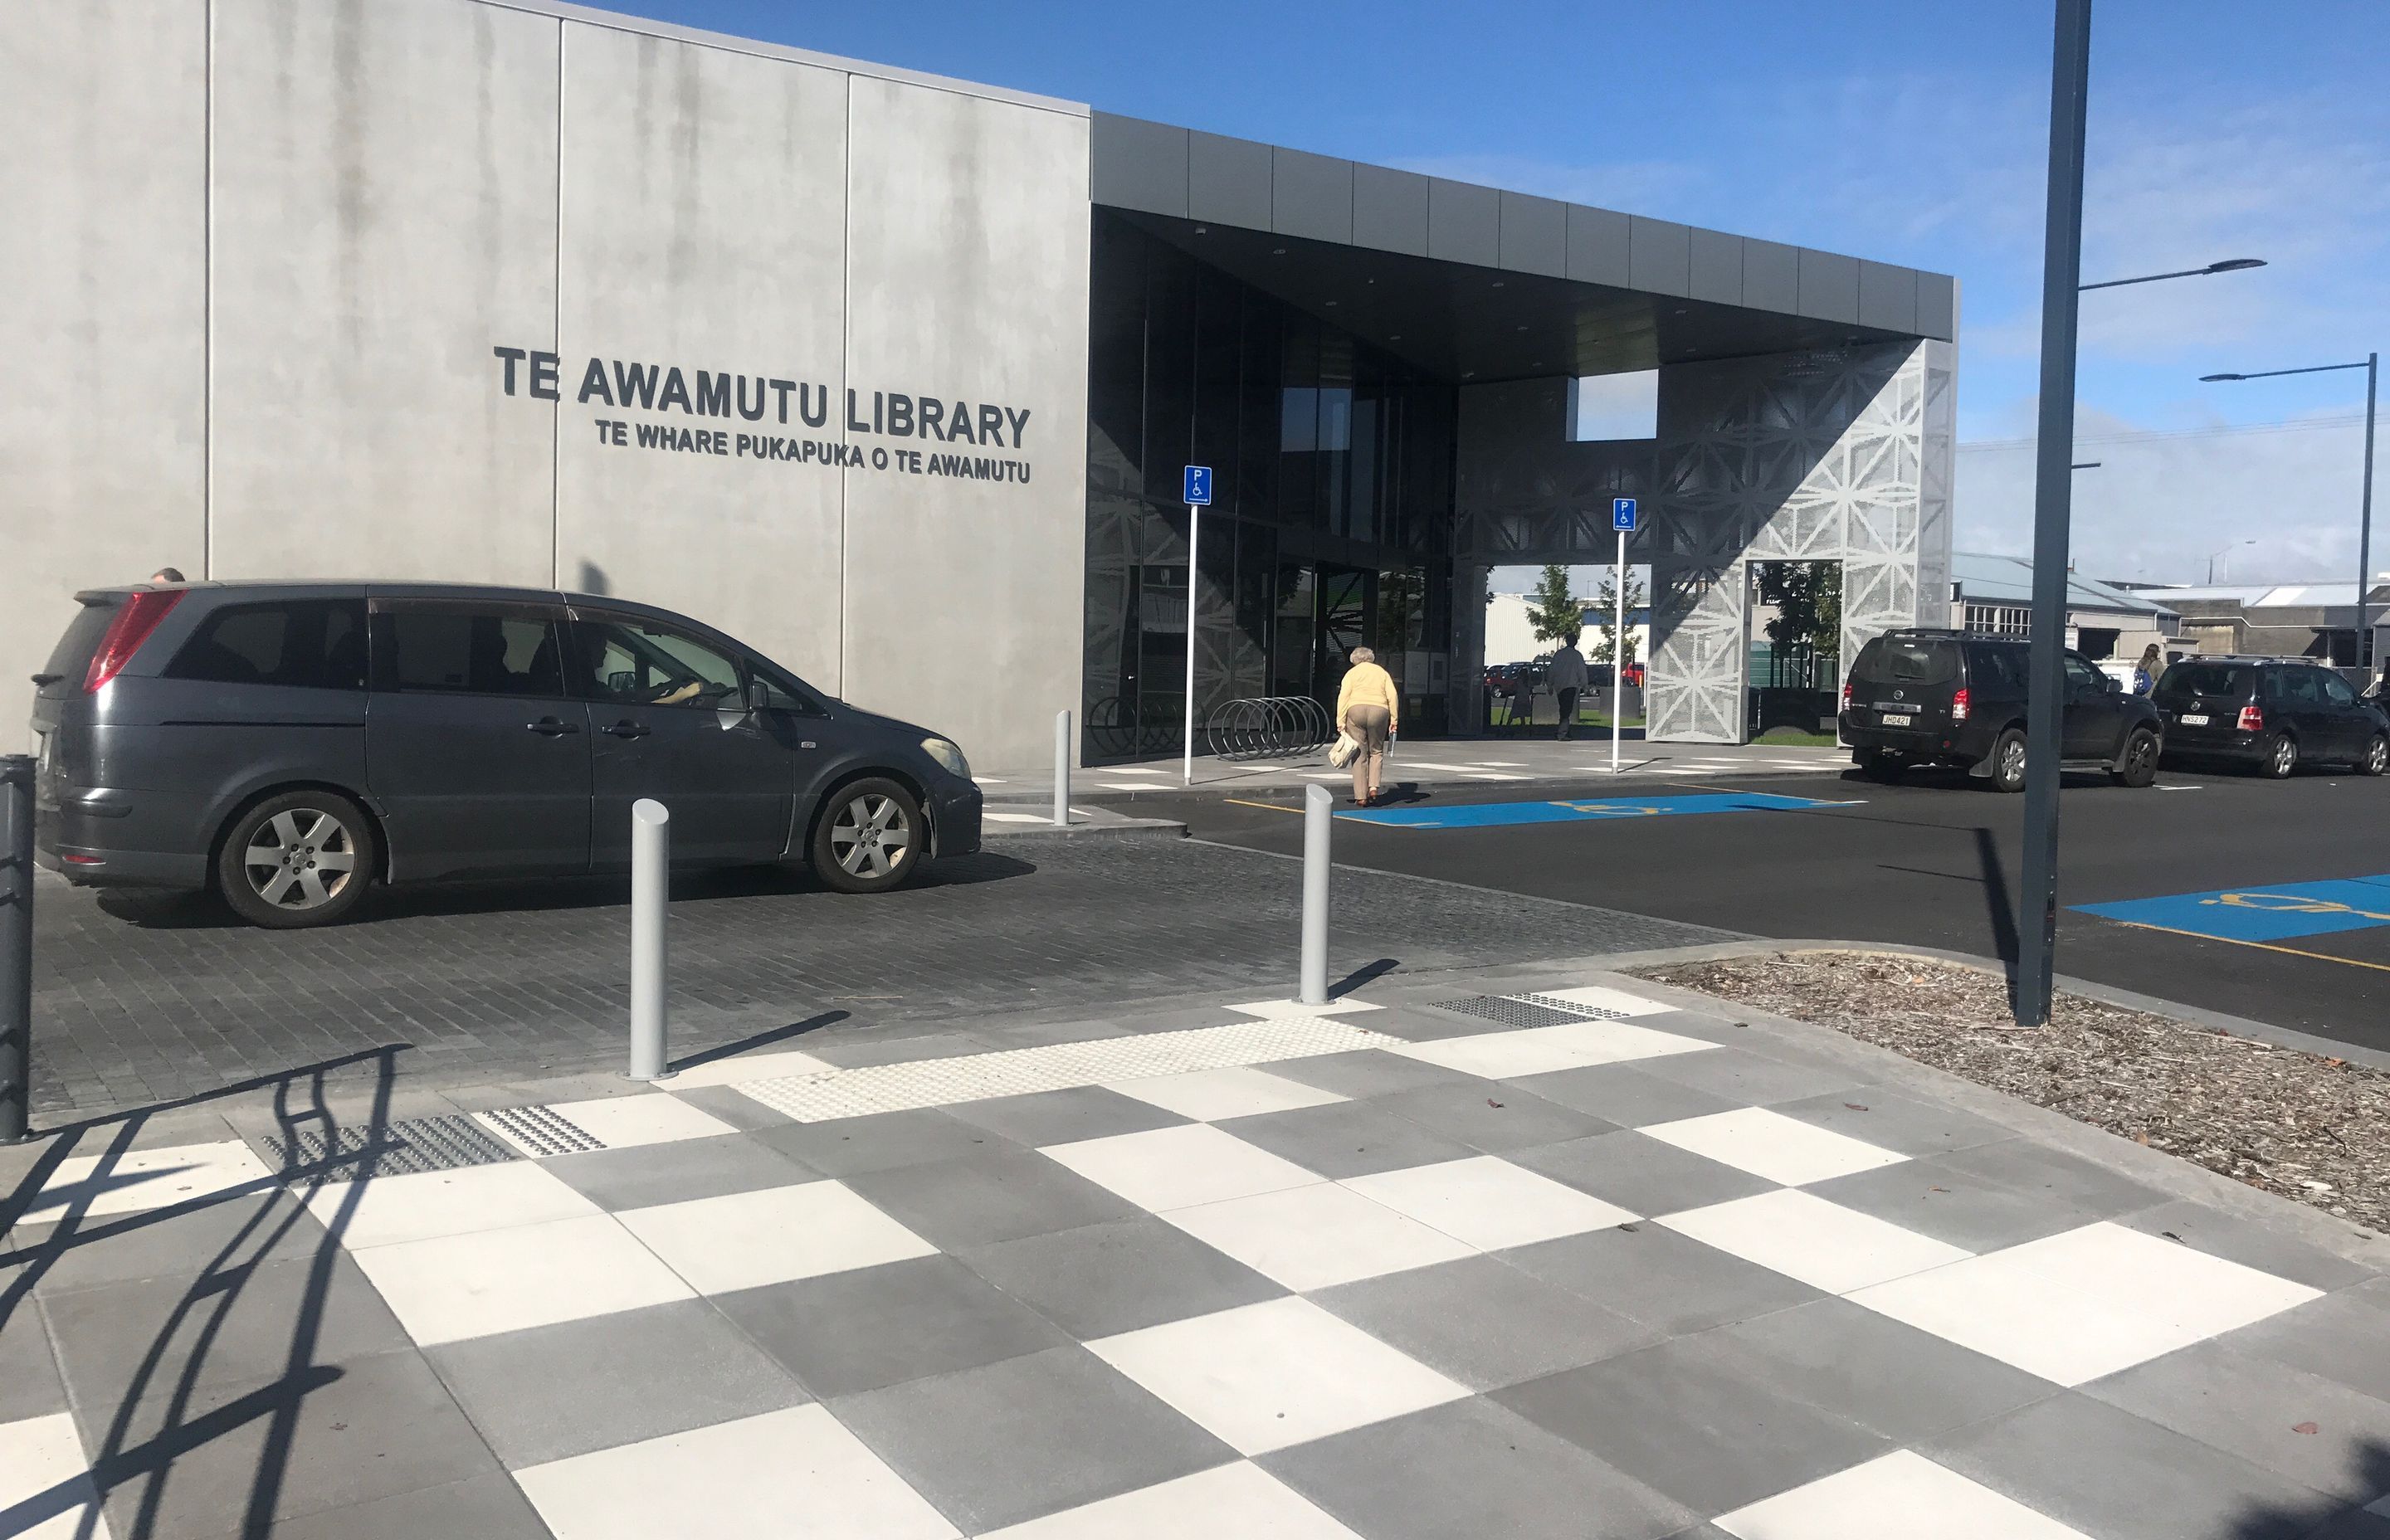 Te Awamutu Library utilises White Terrazzo pavers